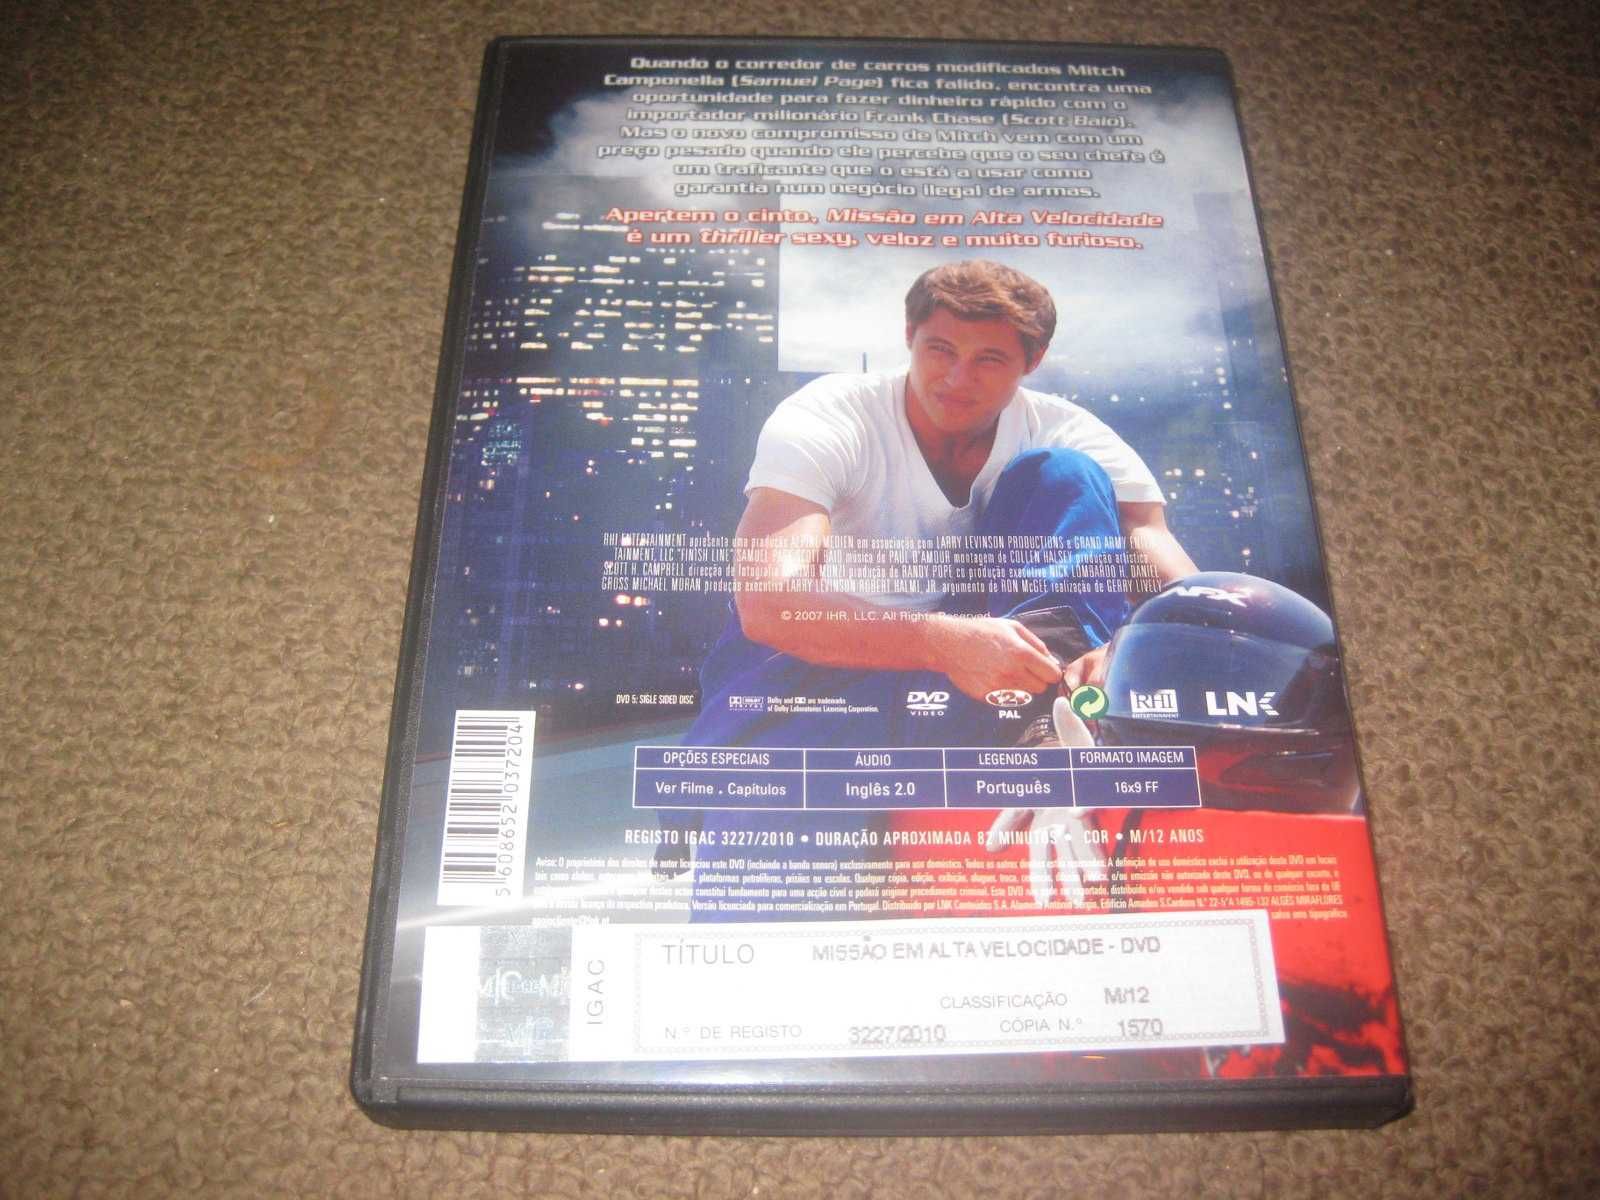 DVD "Missão em Alta Velocidade" de Gerry Lively